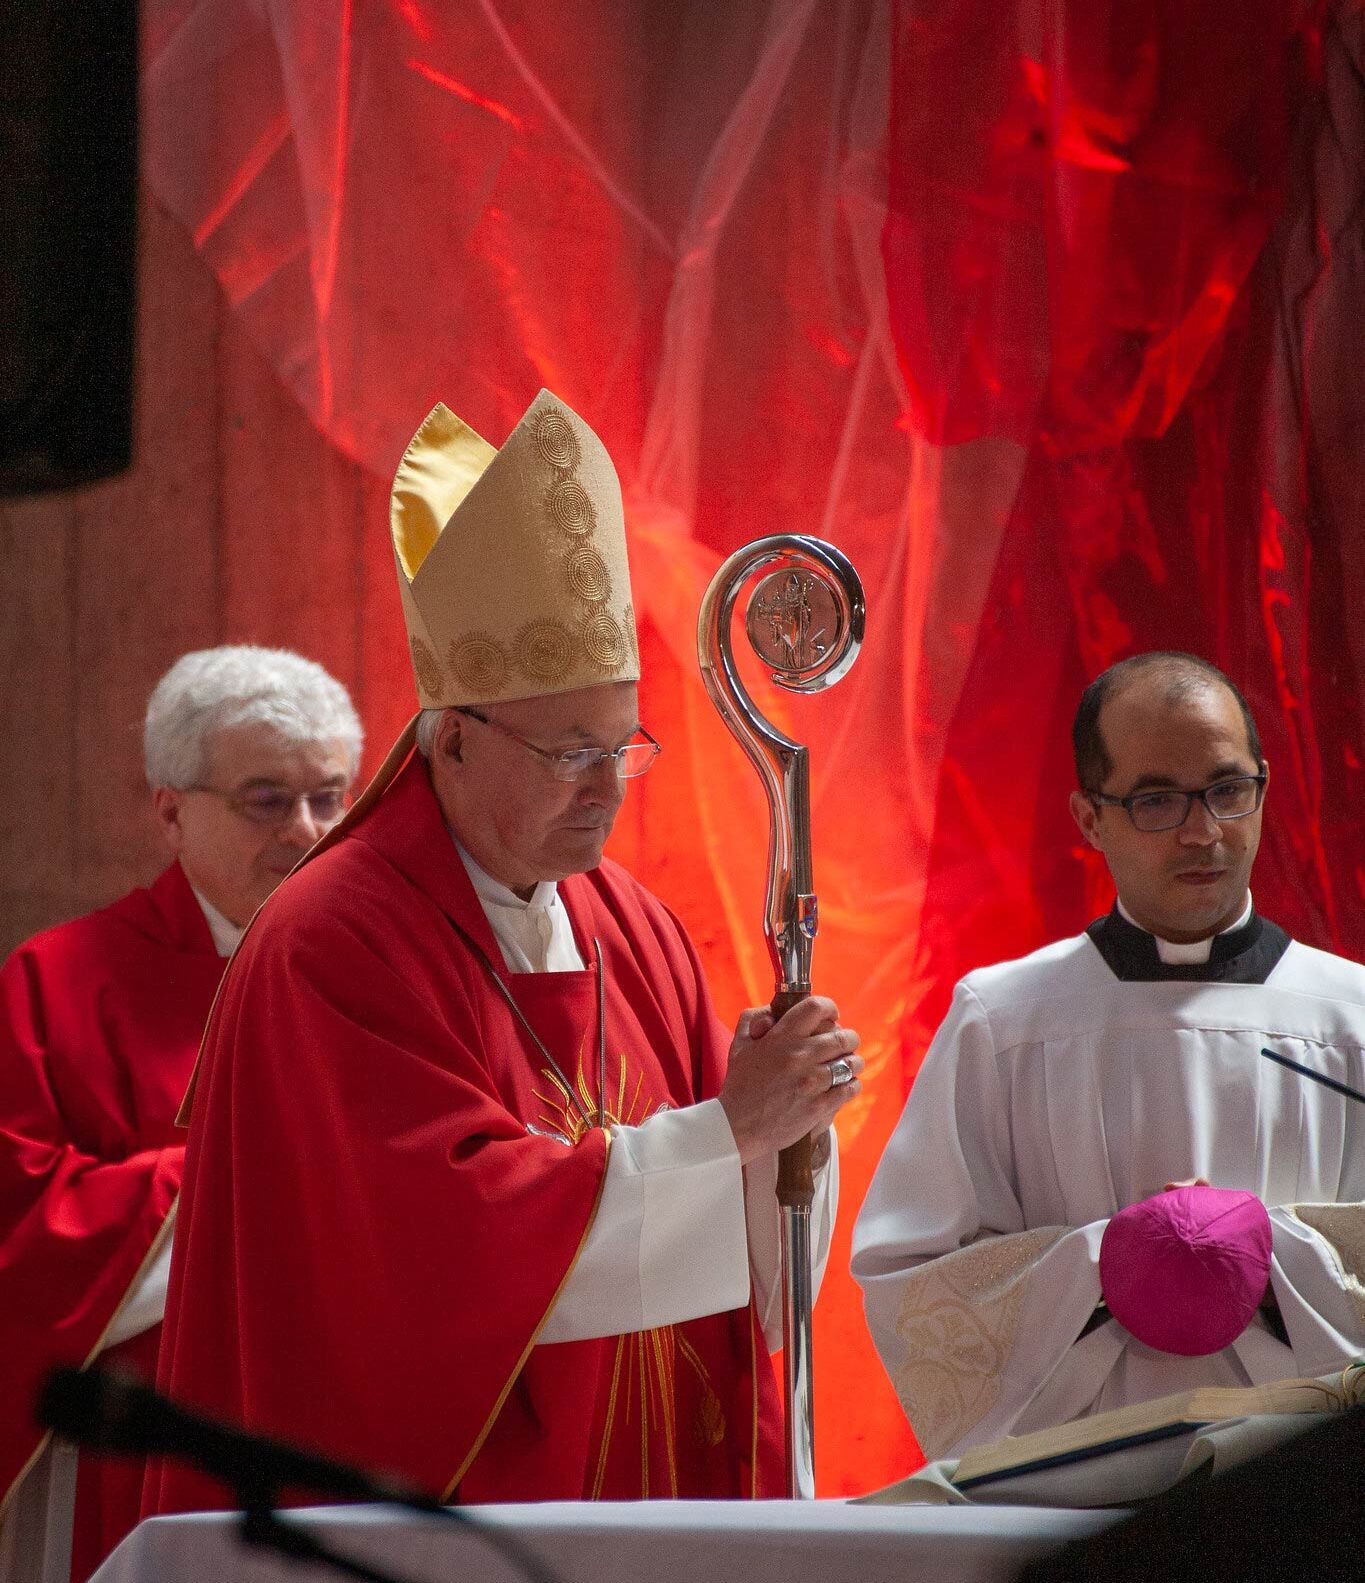 Bischof am Altar vor rot beleuchtetem Hintergrund, sehr stimmungsvoll